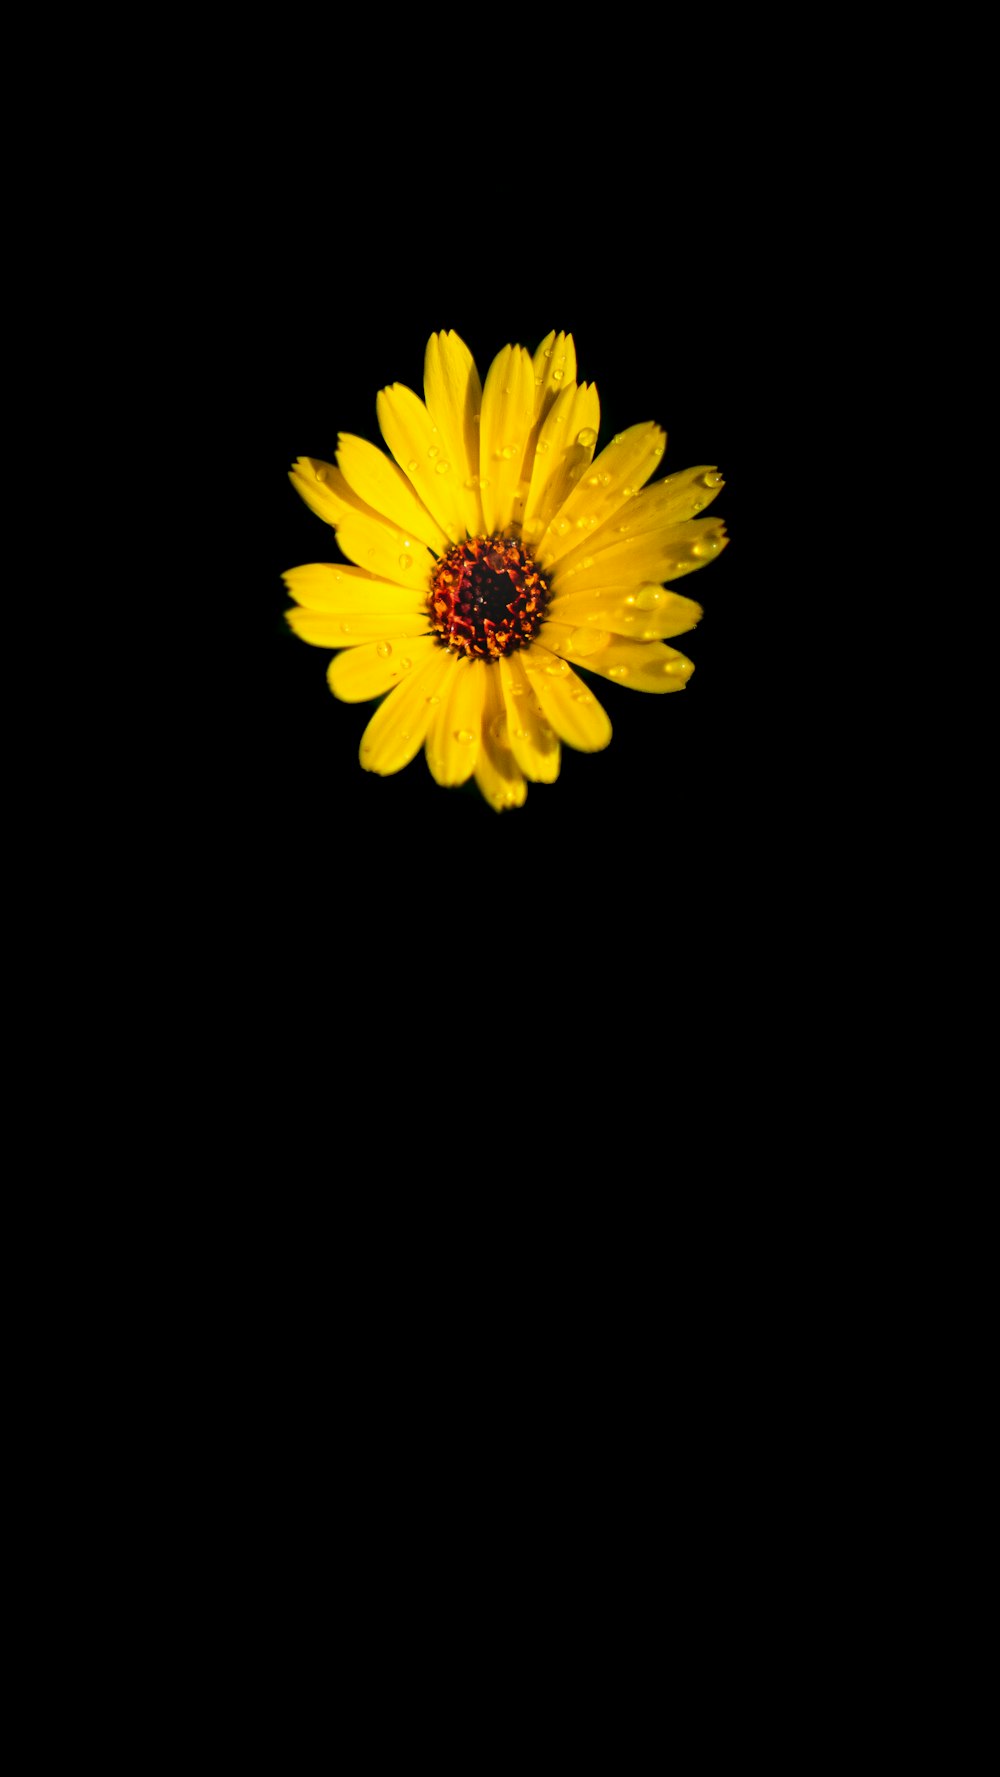 Nếu bạn đam mê sắc vàng, thì hình ảnh hoa vàng chắc chắn sẽ khiến bạn cảm thấy đắm say. Hãy xem ngay để khám phá màu sắc tuyệt đẹp của những bông hoa này.